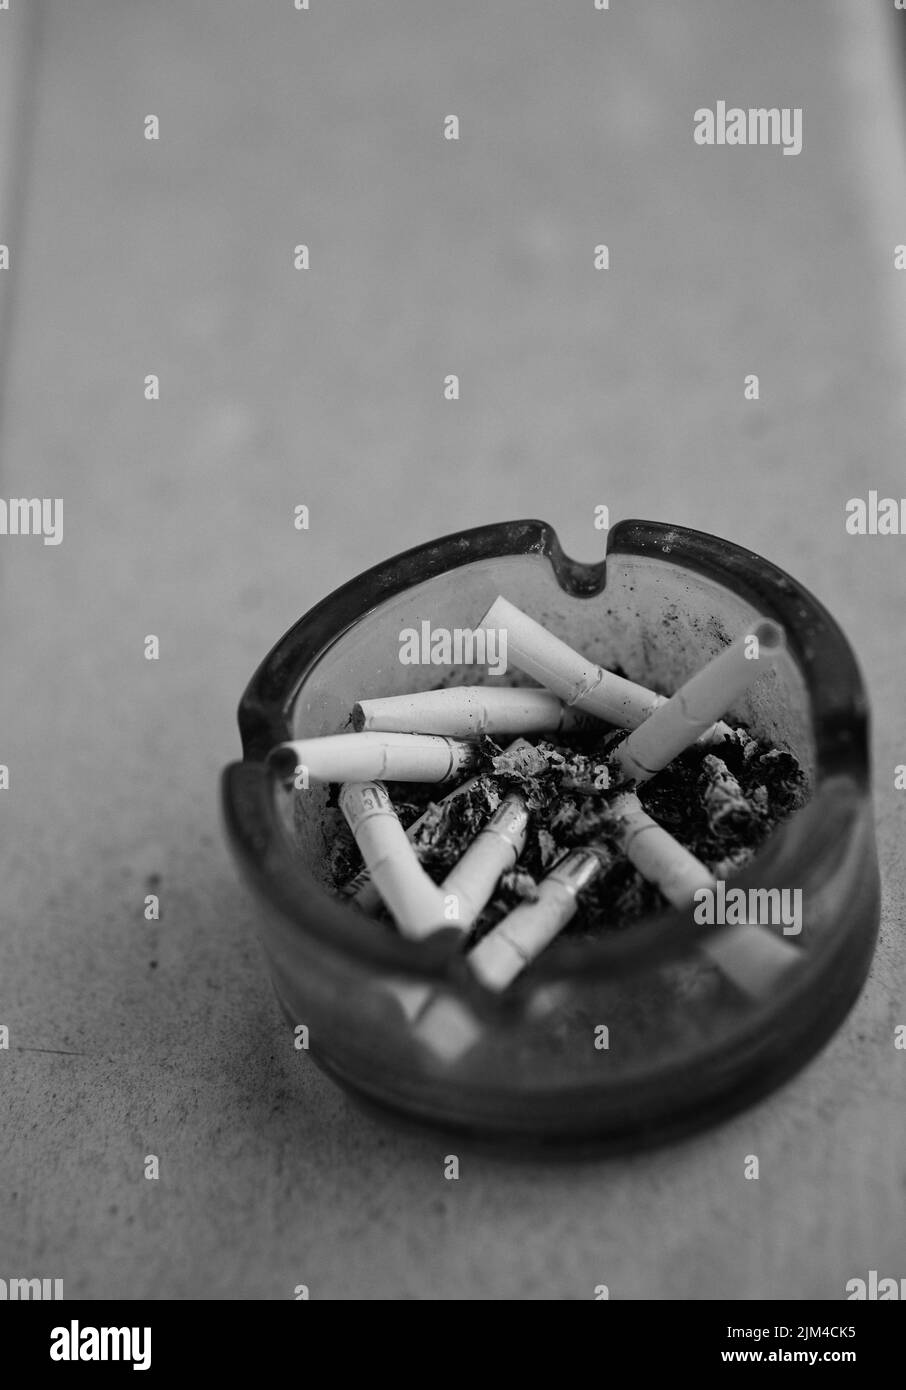 Eine vertikale Nahaufnahme von Zigarettenkippen in einem vollen Aschenbecher in Graustufen mit Copyspace Stockfoto